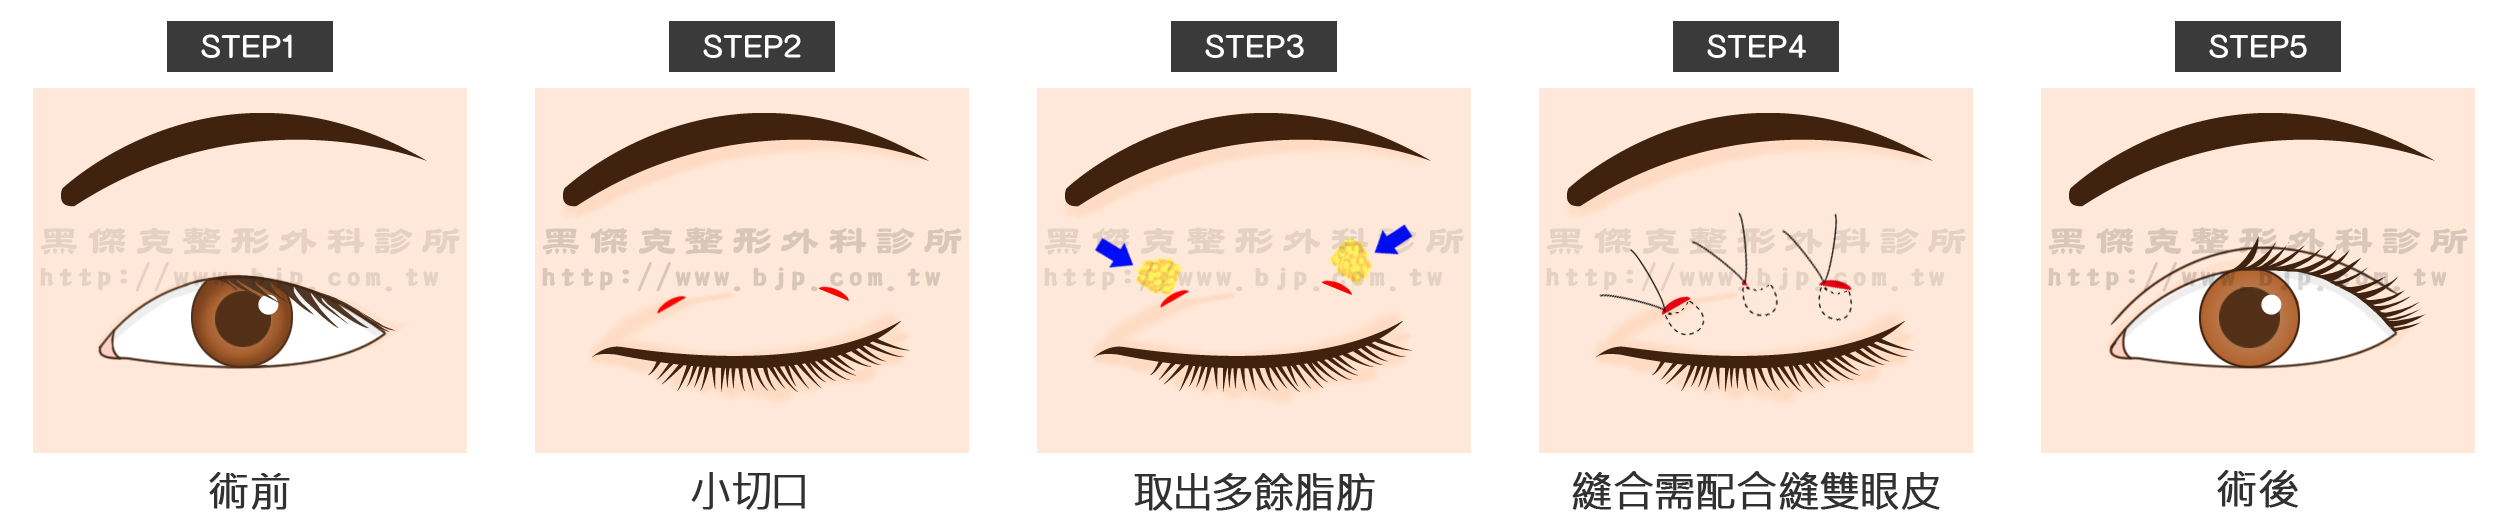 割雙眼皮手術,是在上眼瞼上做一個切口,從傷口上創造一個漂亮褶線線條。同時可以改善外觀條件(如移除適量眼眶脂肪等),然後再將表皮傷口縫起來。